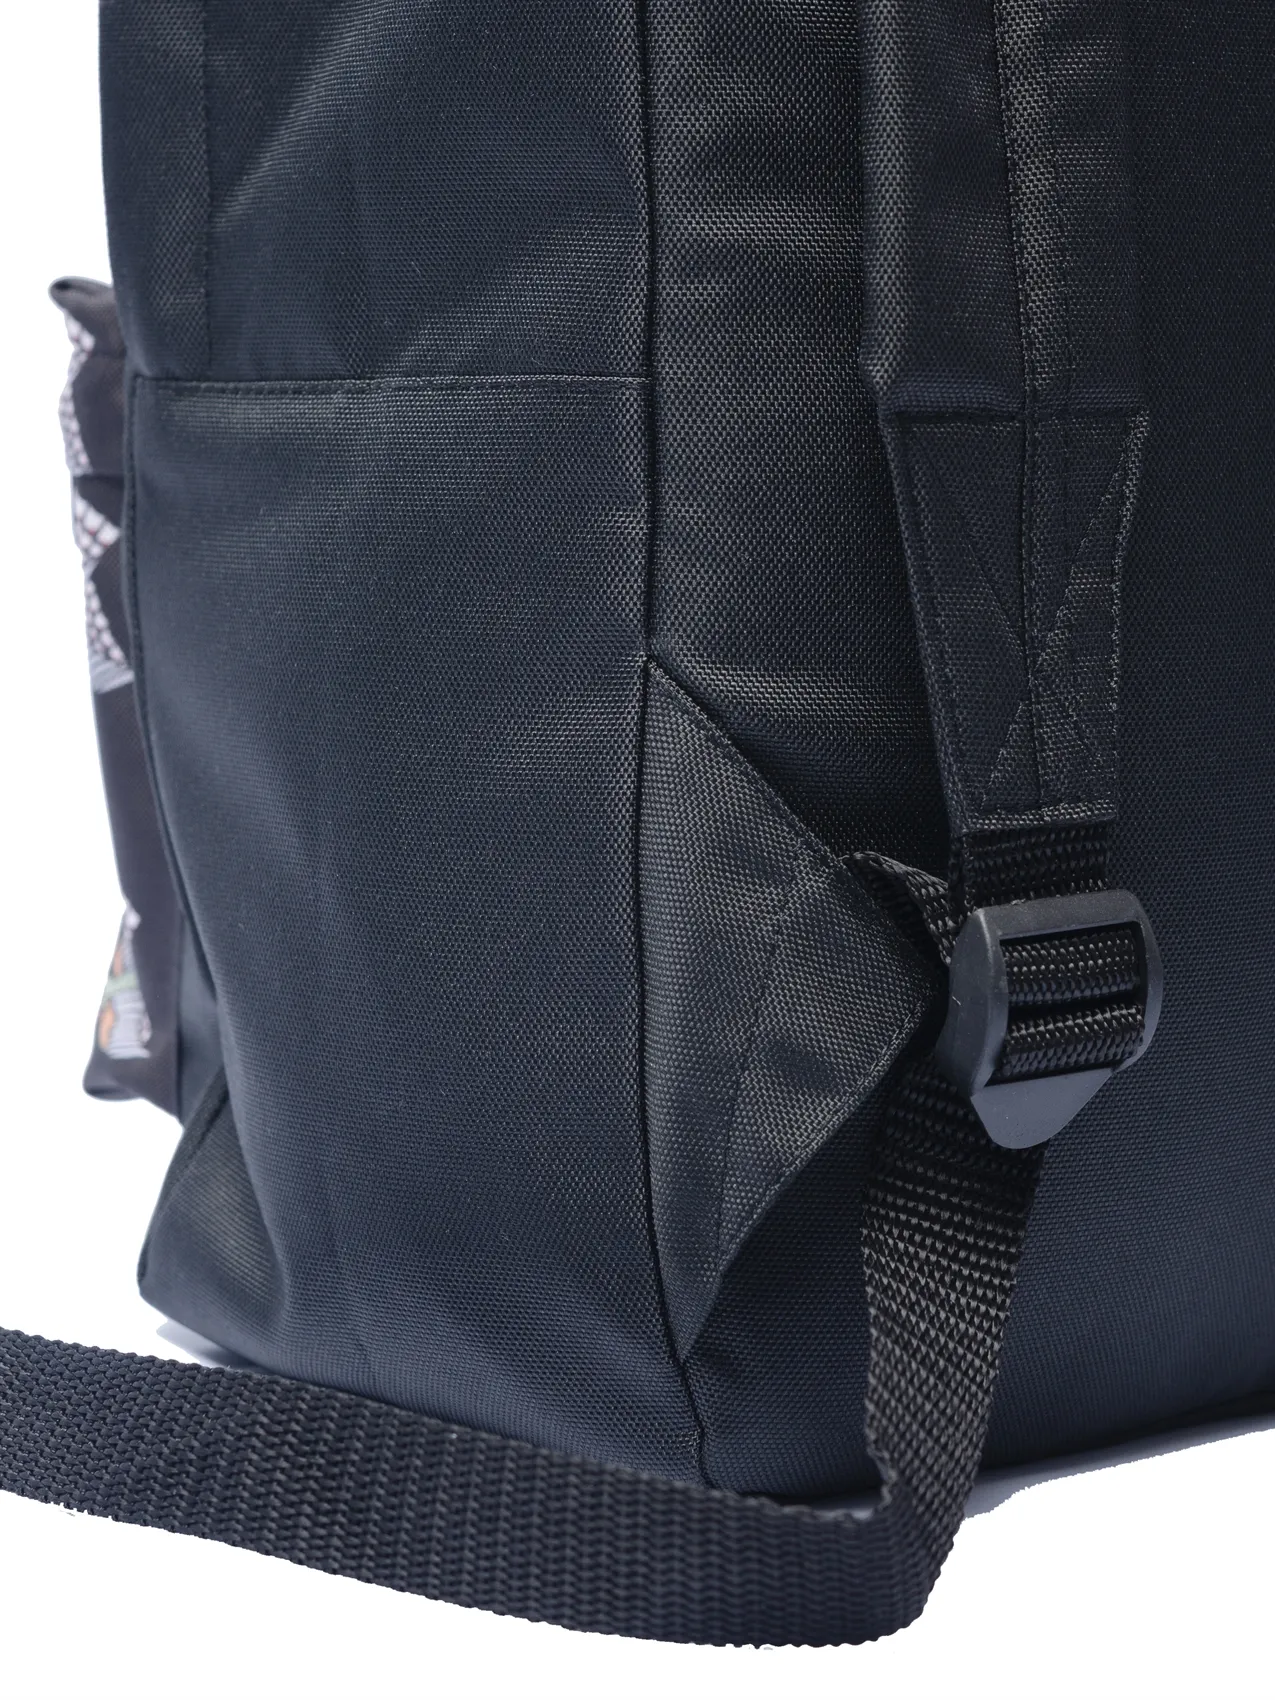 Рюкзак Oldy принт карман (черный, ласточки)